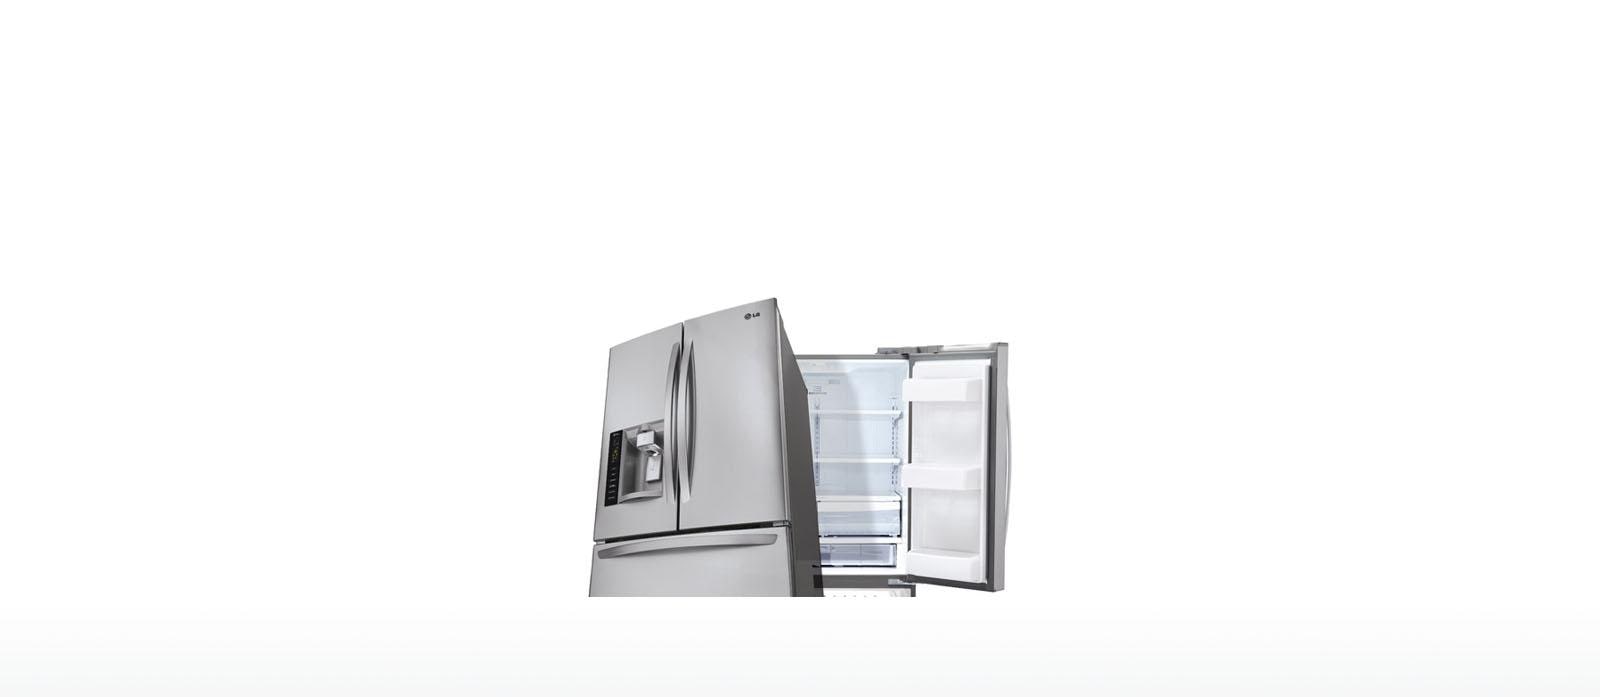 lt700p lt600p lt500p refrigerators